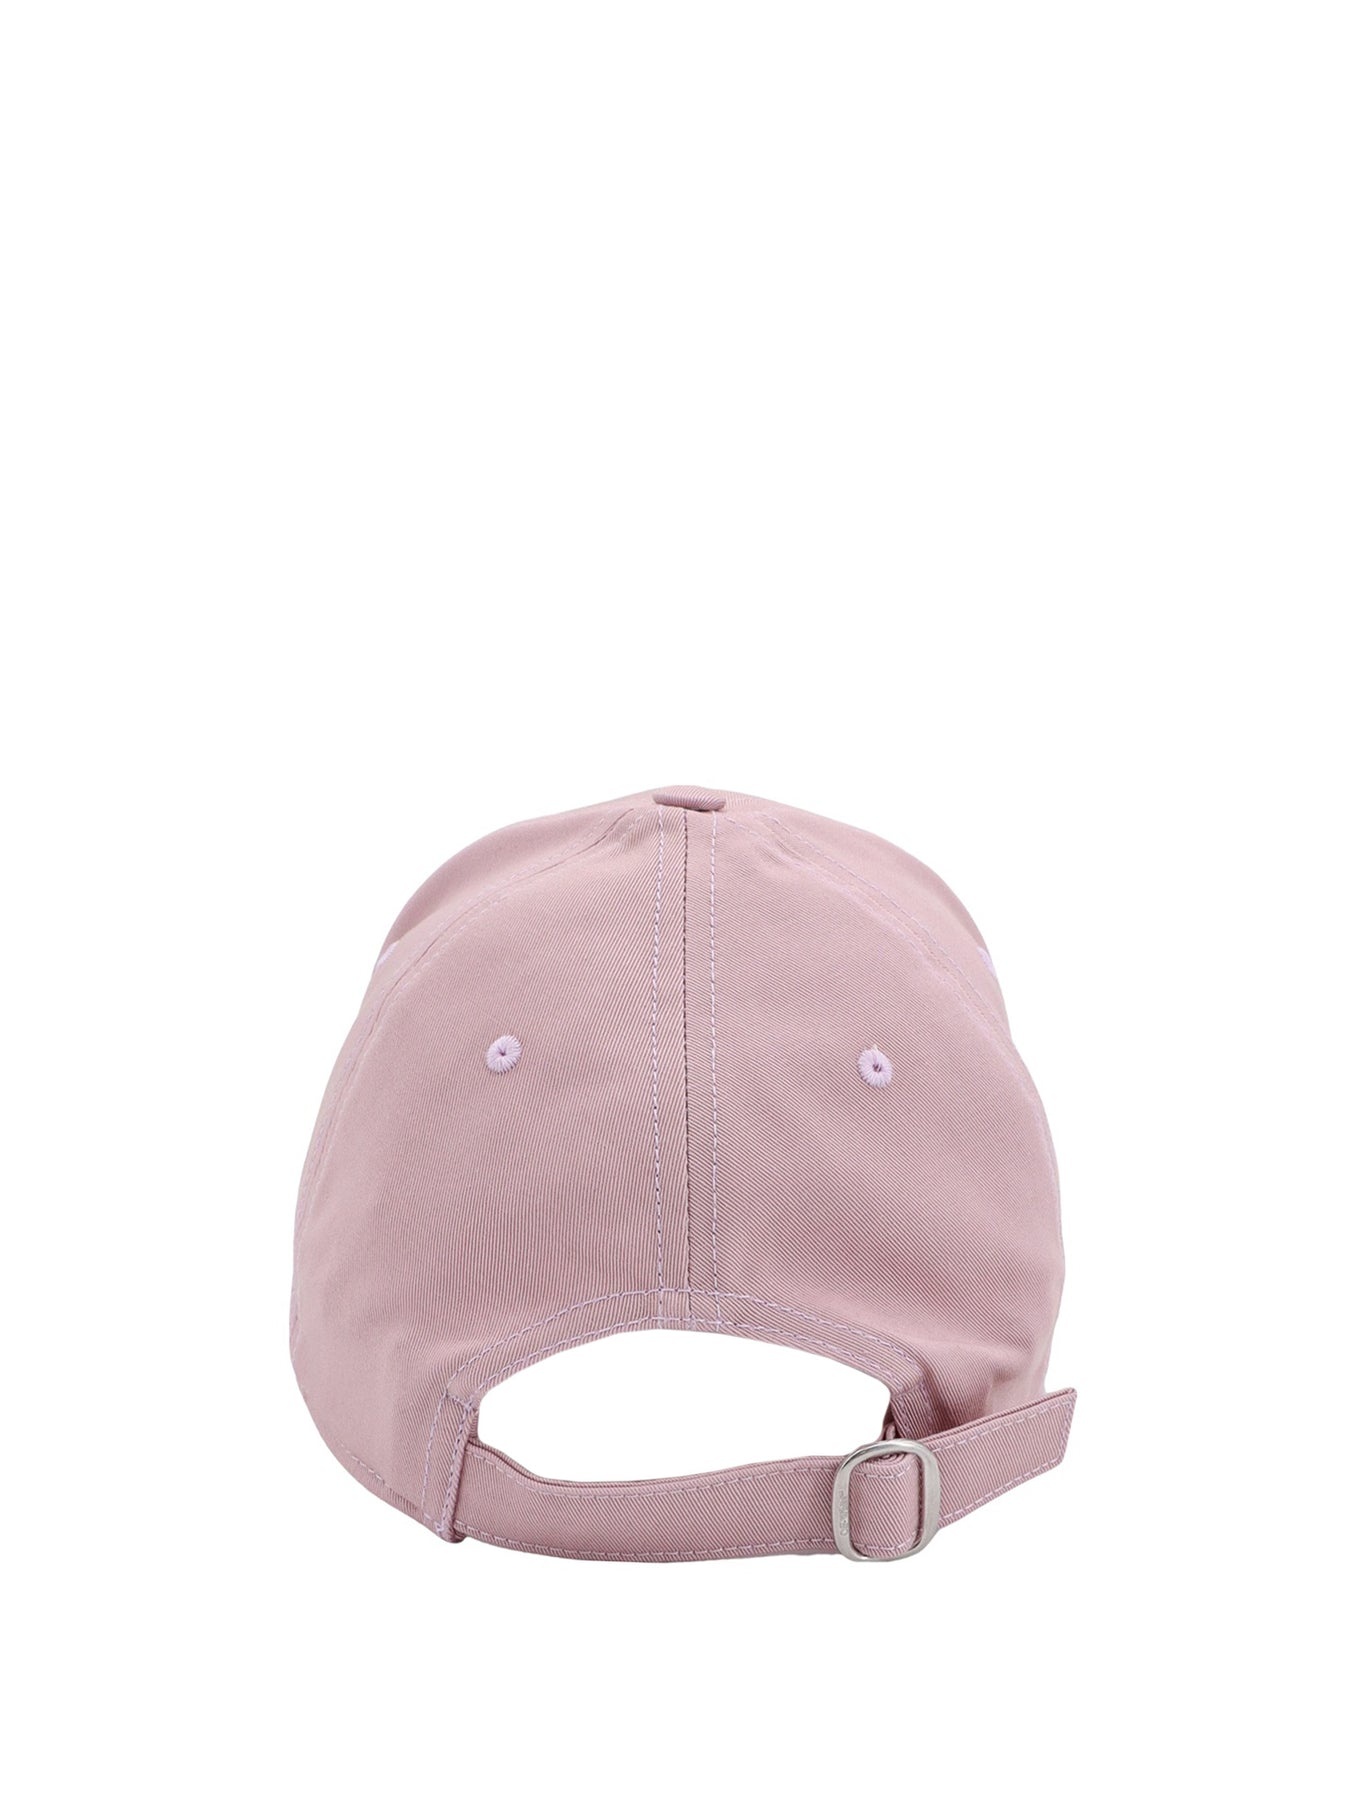 Cotton hat - 3